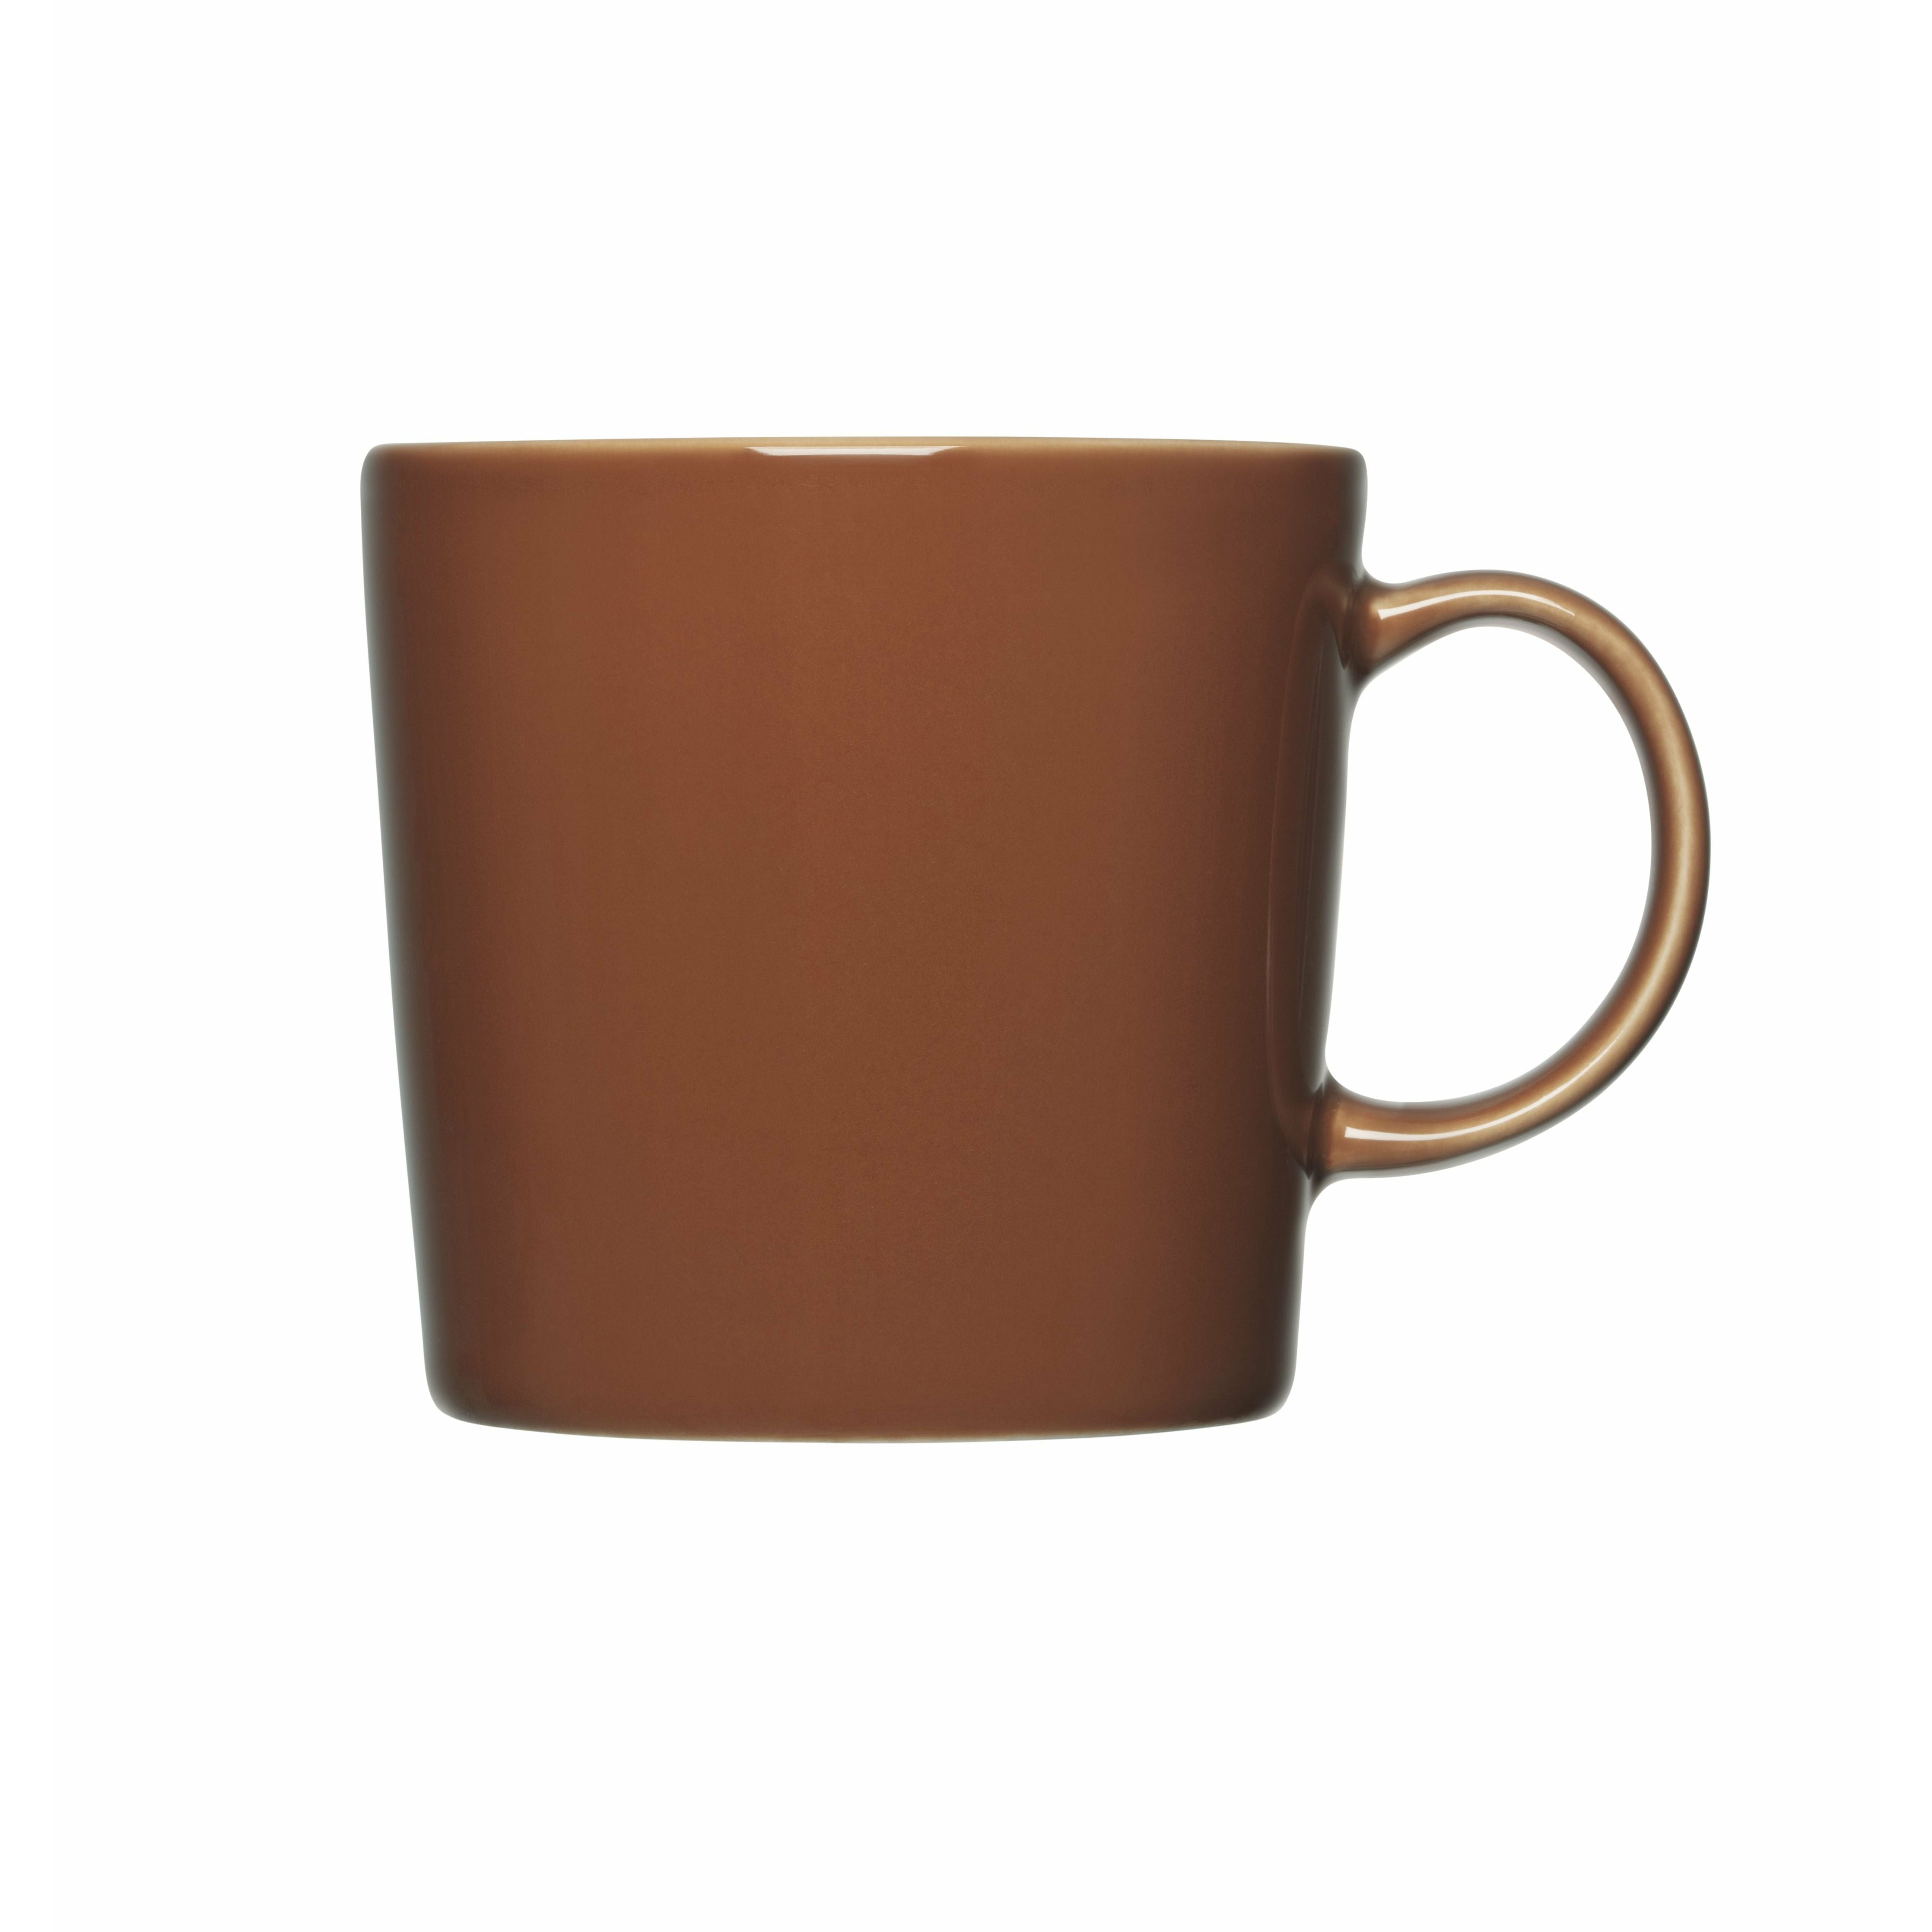 Iittala Teema tasse 0,3 L, brun vintage